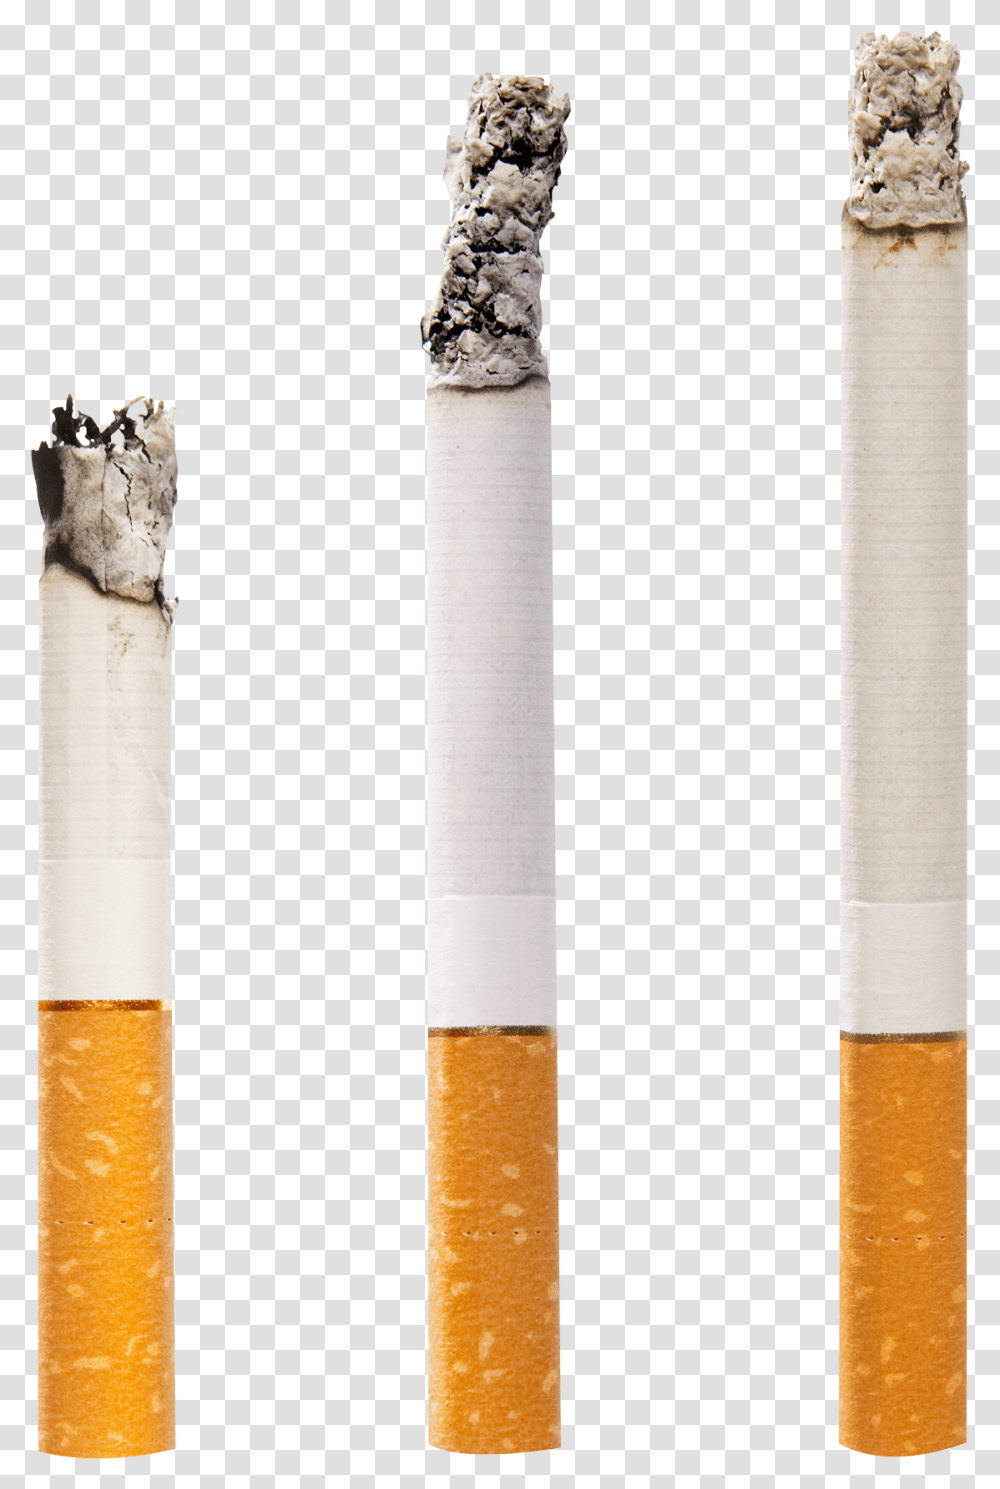 Cigarettes Image Cigarettes, Architecture, Building, Pillar, Column Transparent Png